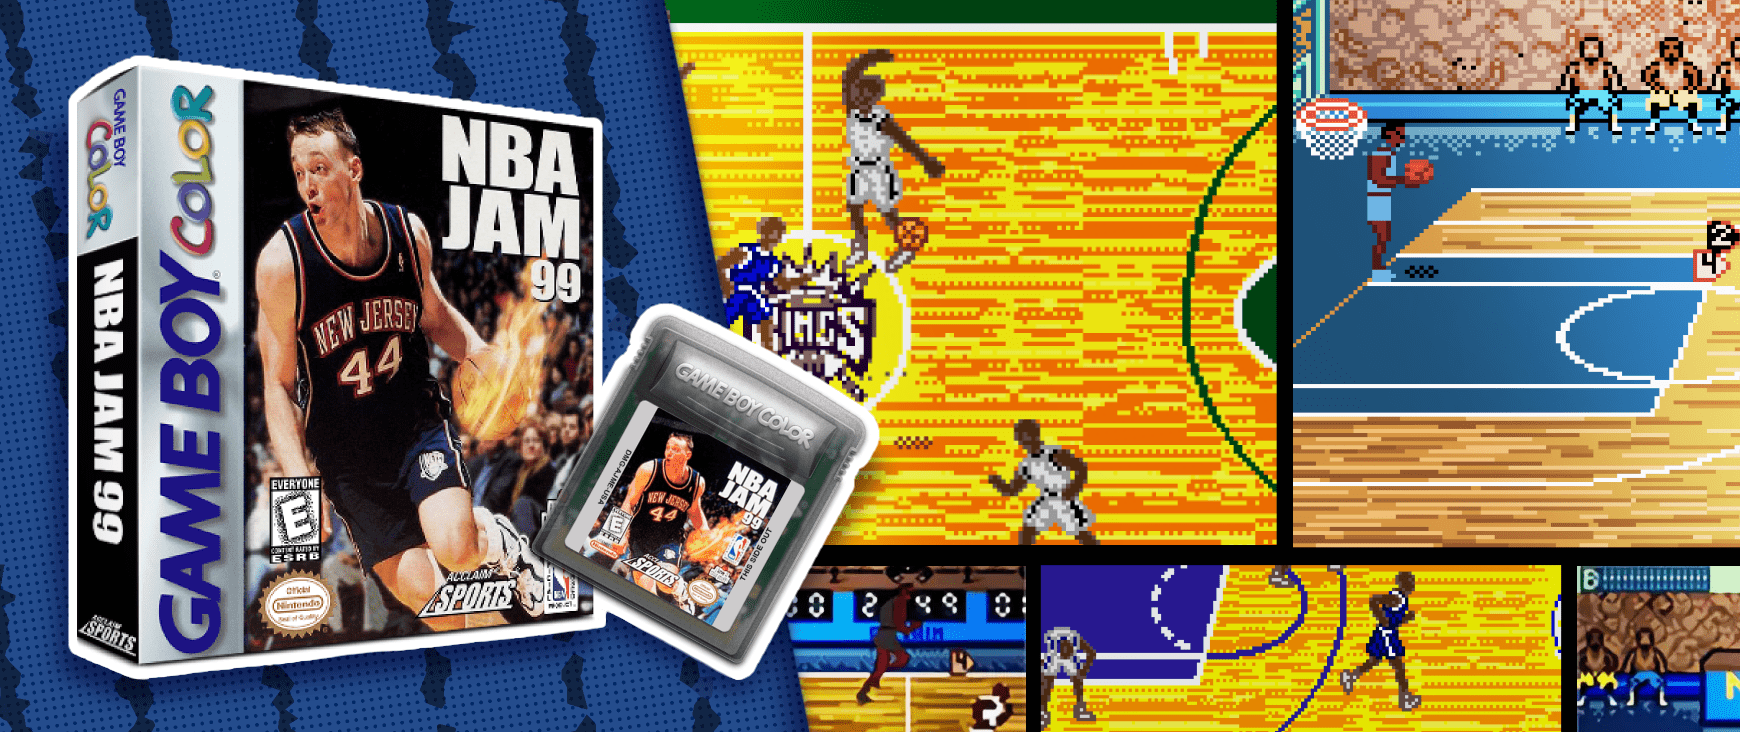 NBA Jam 99 on Game Boy Color